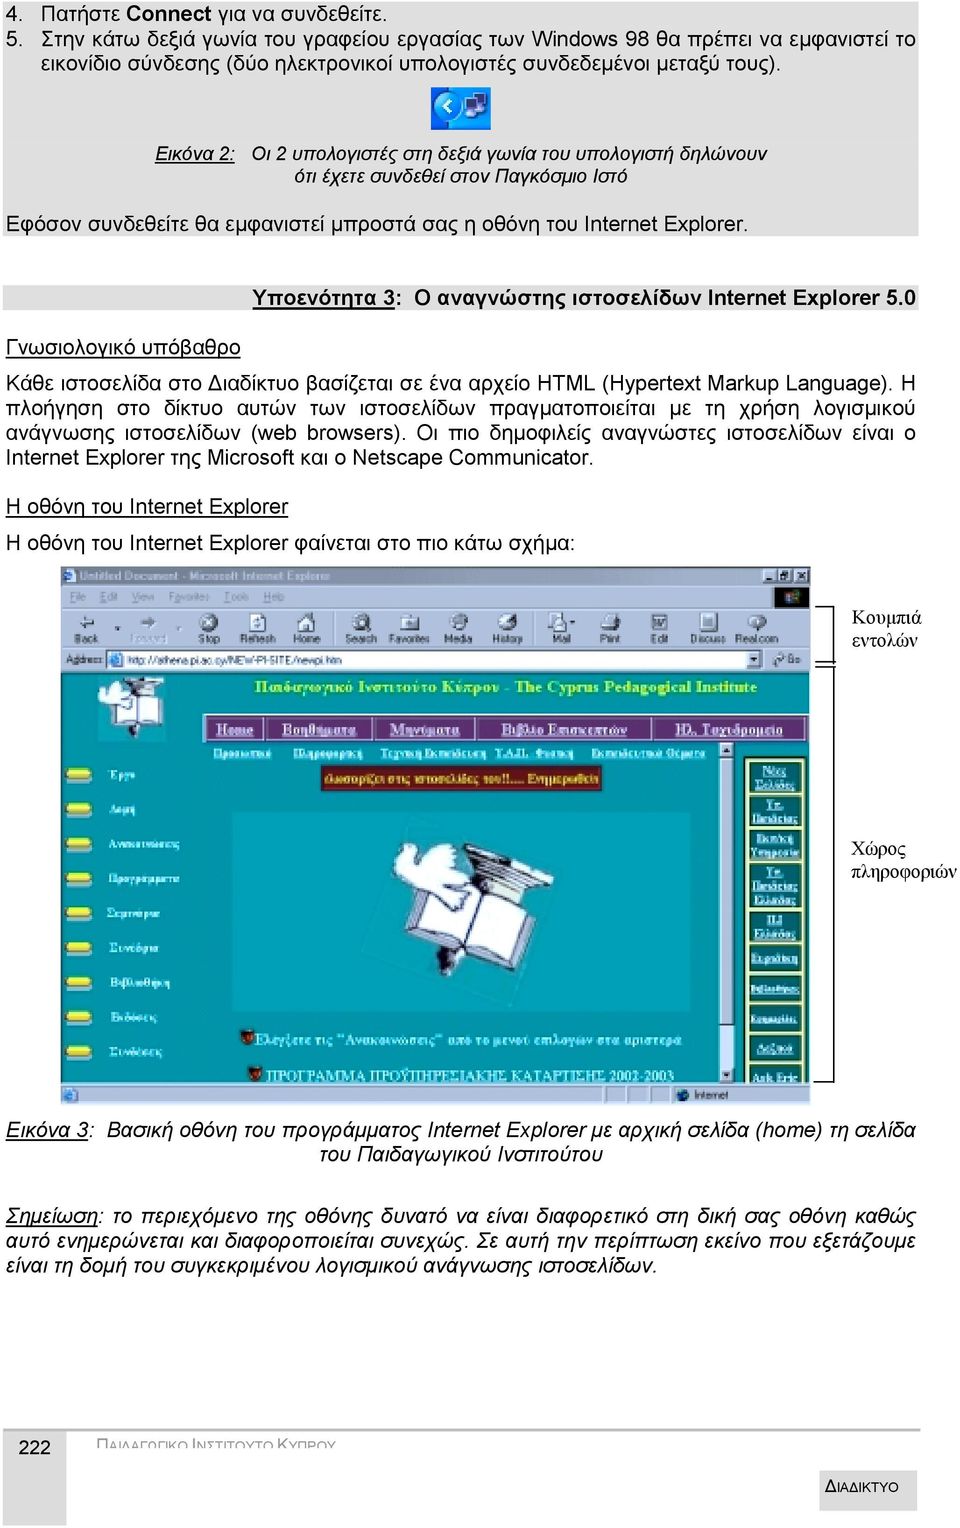 Εικόνα 2: Οι 2 υπολογιστές στη δεξιά γωνία του υπολογιστή δηλώνουν ότι έχετε συνδεθεί στον Παγκόσμιο Ιστό Εφόσον συνδεθείτε θα εμφανιστεί μπροστά σας η οθόνη του Internet Explorer.